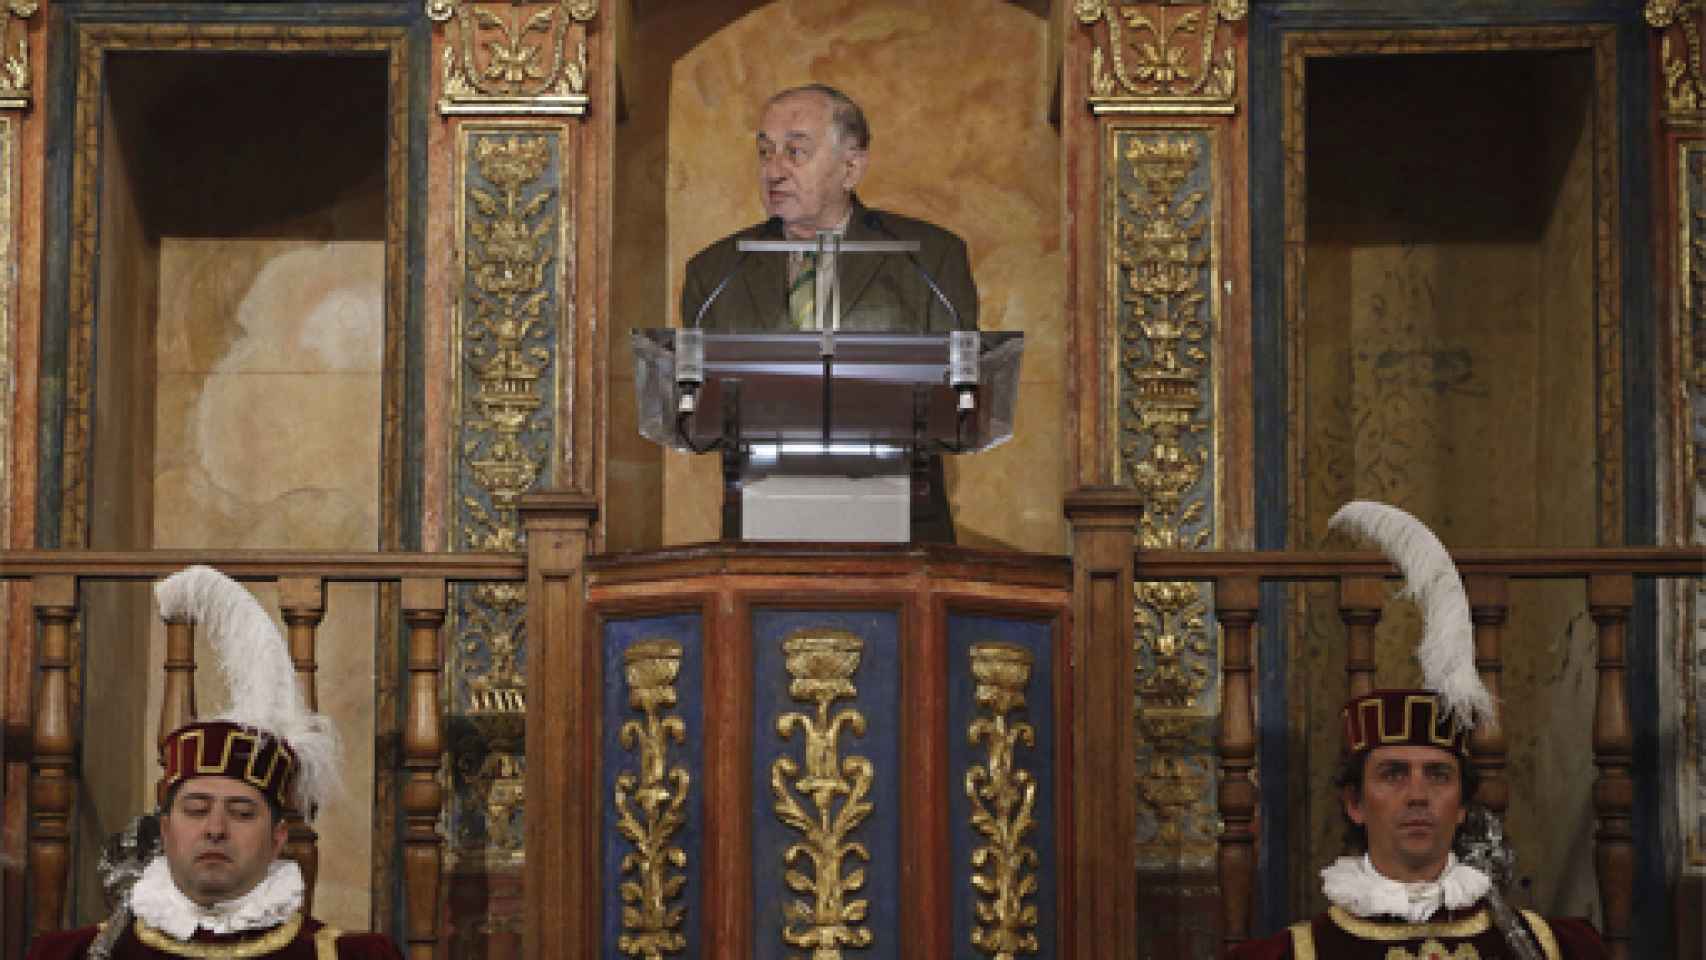 Image: Discurso íntegro de Juan Goytisolo en la ceremonia de entrega del Premio Cervantes